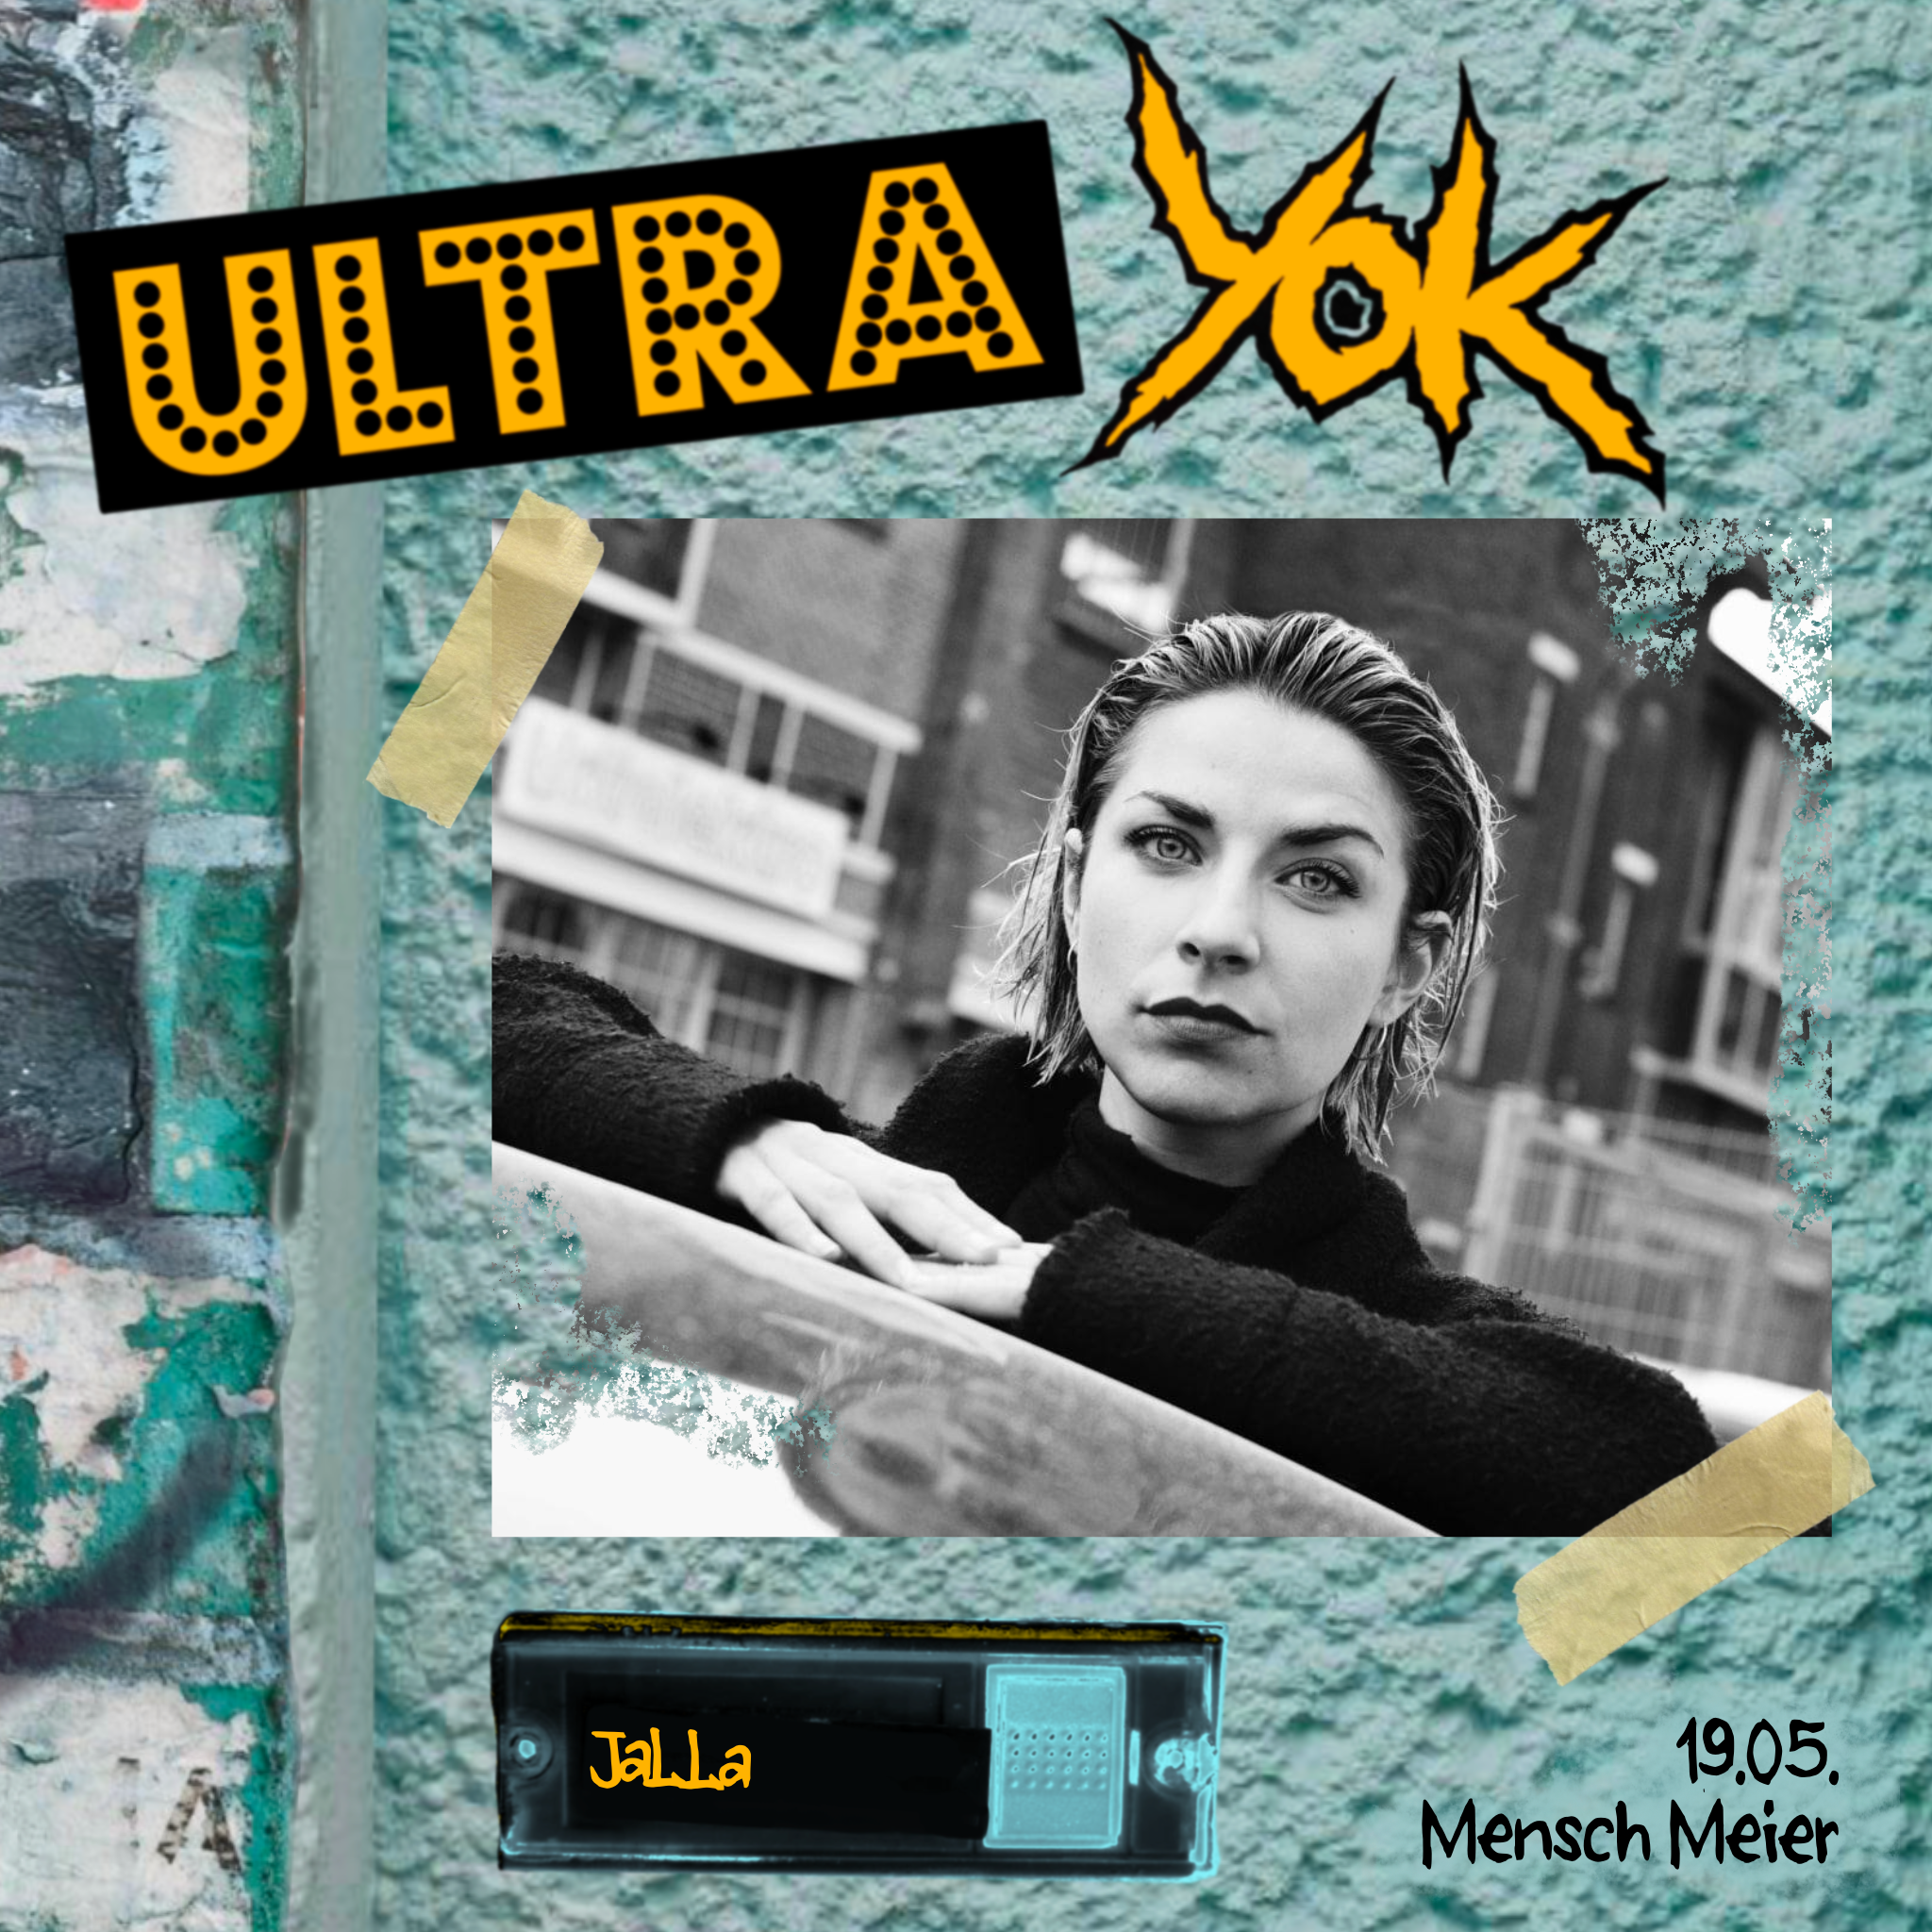 Ultra Yok // 19.05 // Mensch Meier